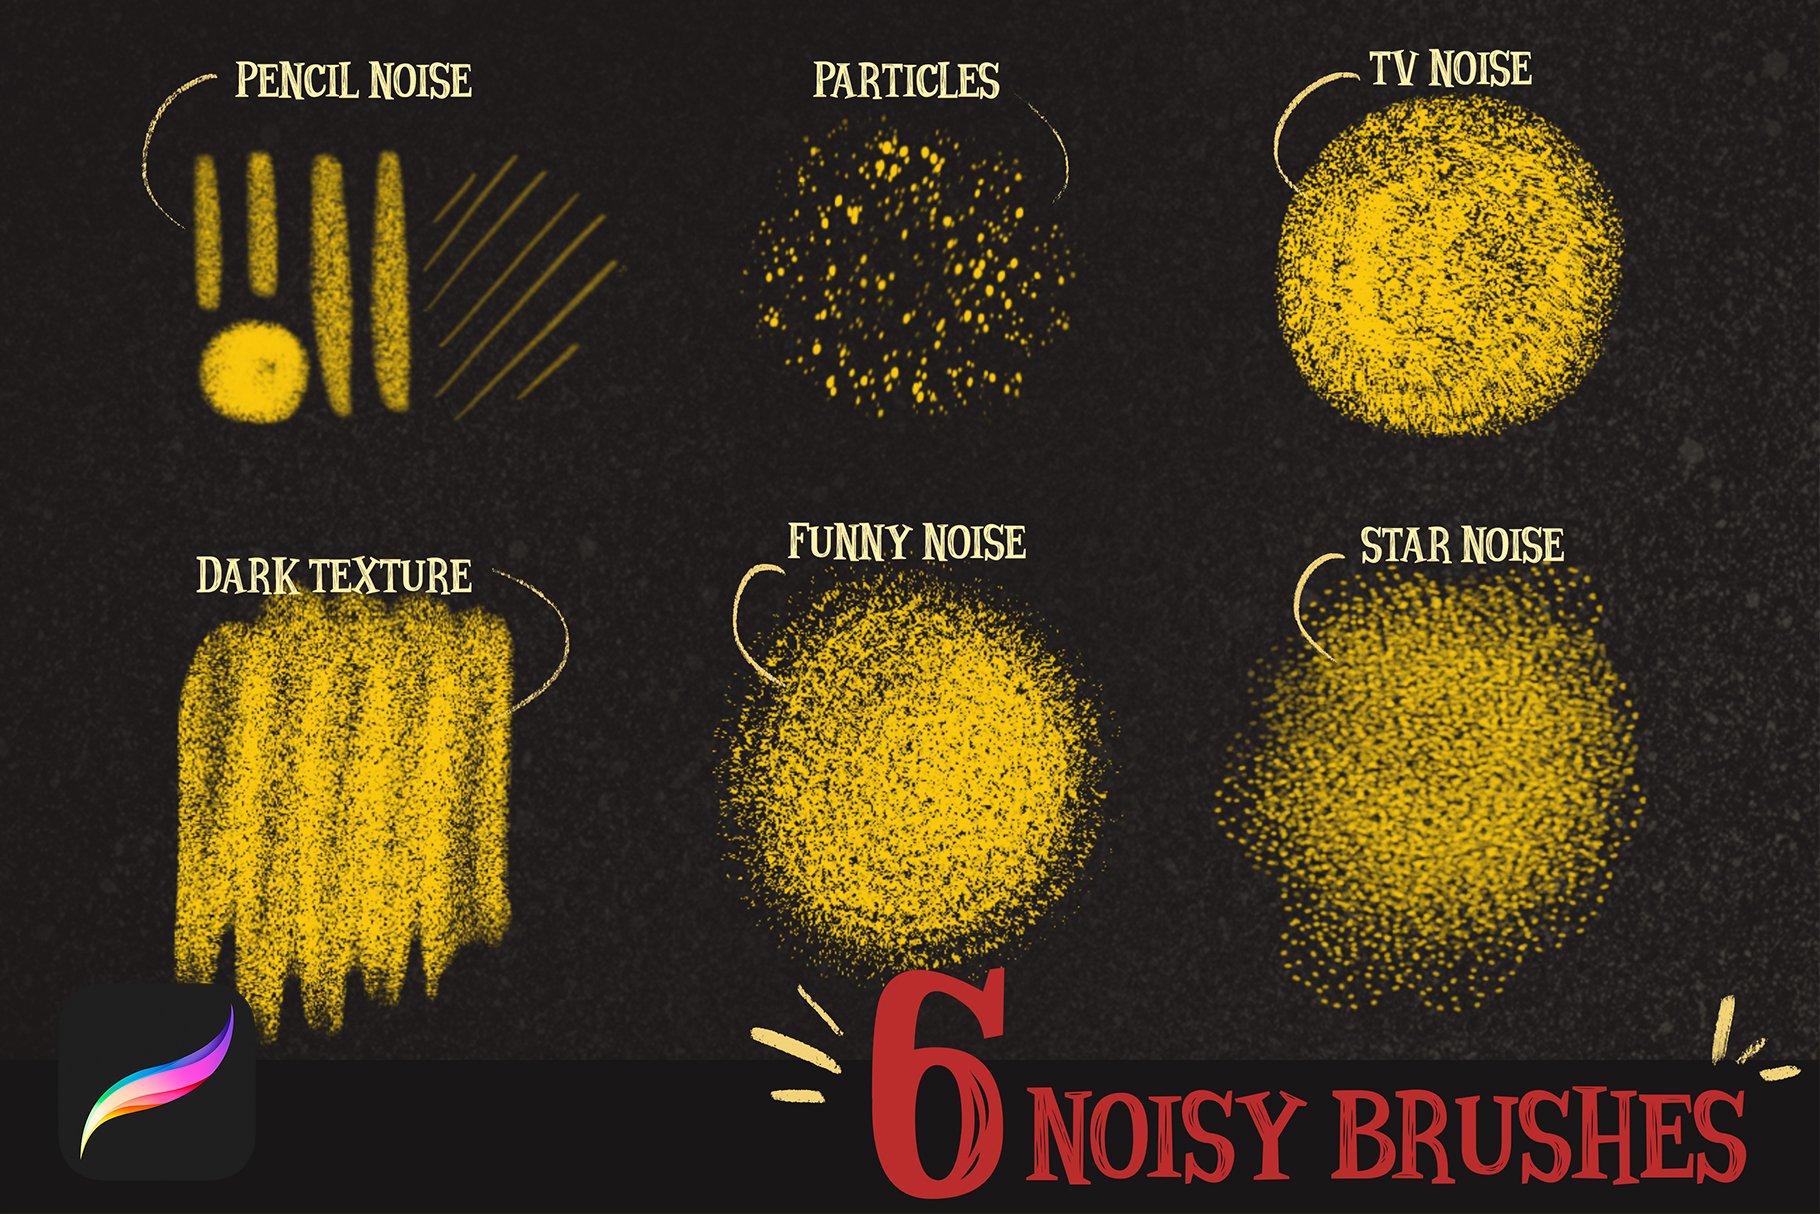 Six noisy brushes.